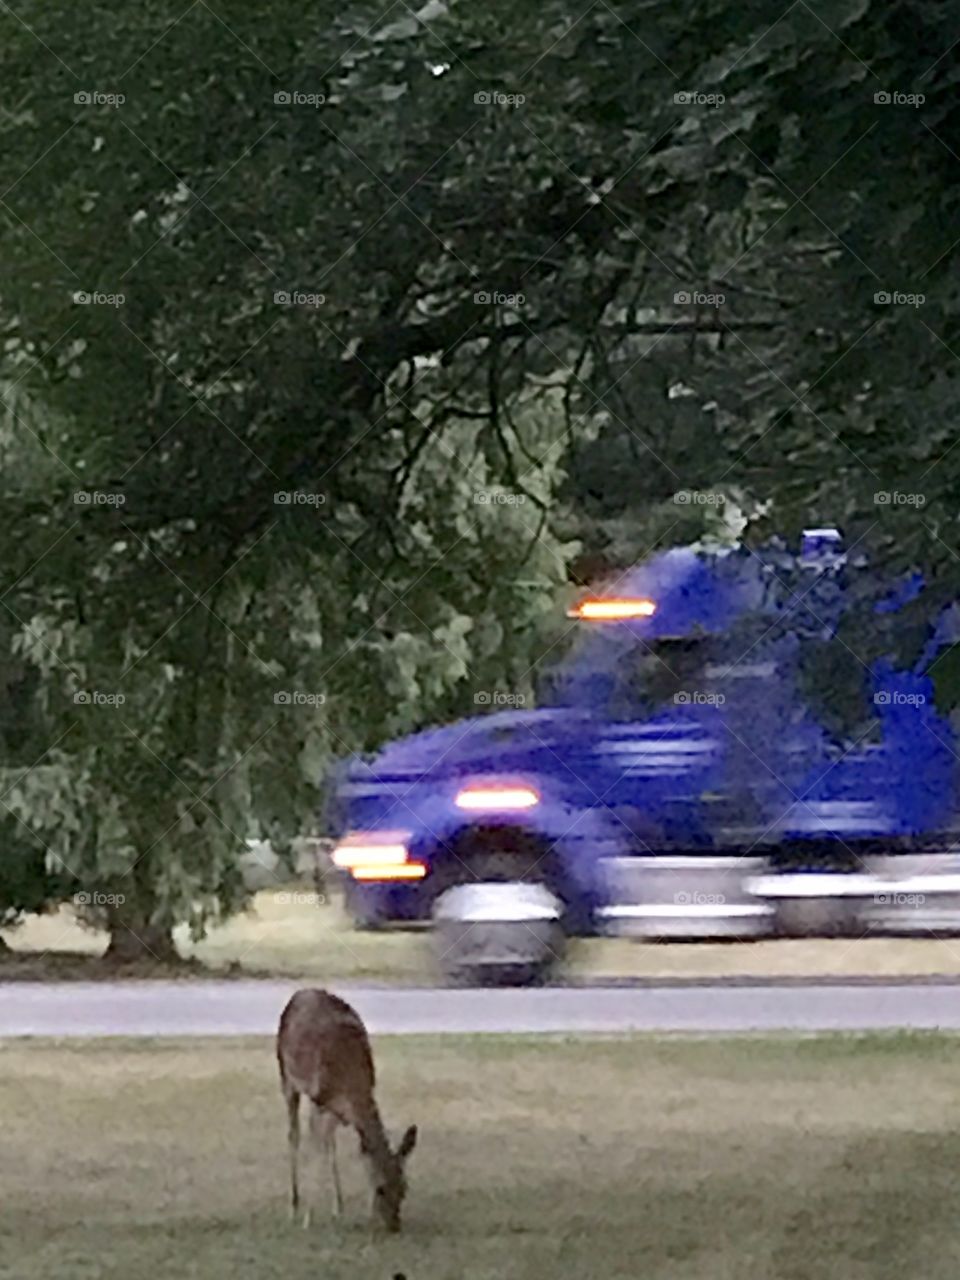 Deer vs truck. Beauty and the Beast. The deer is the beauty to me and the truck is the beast to the deer. Coexisting. 